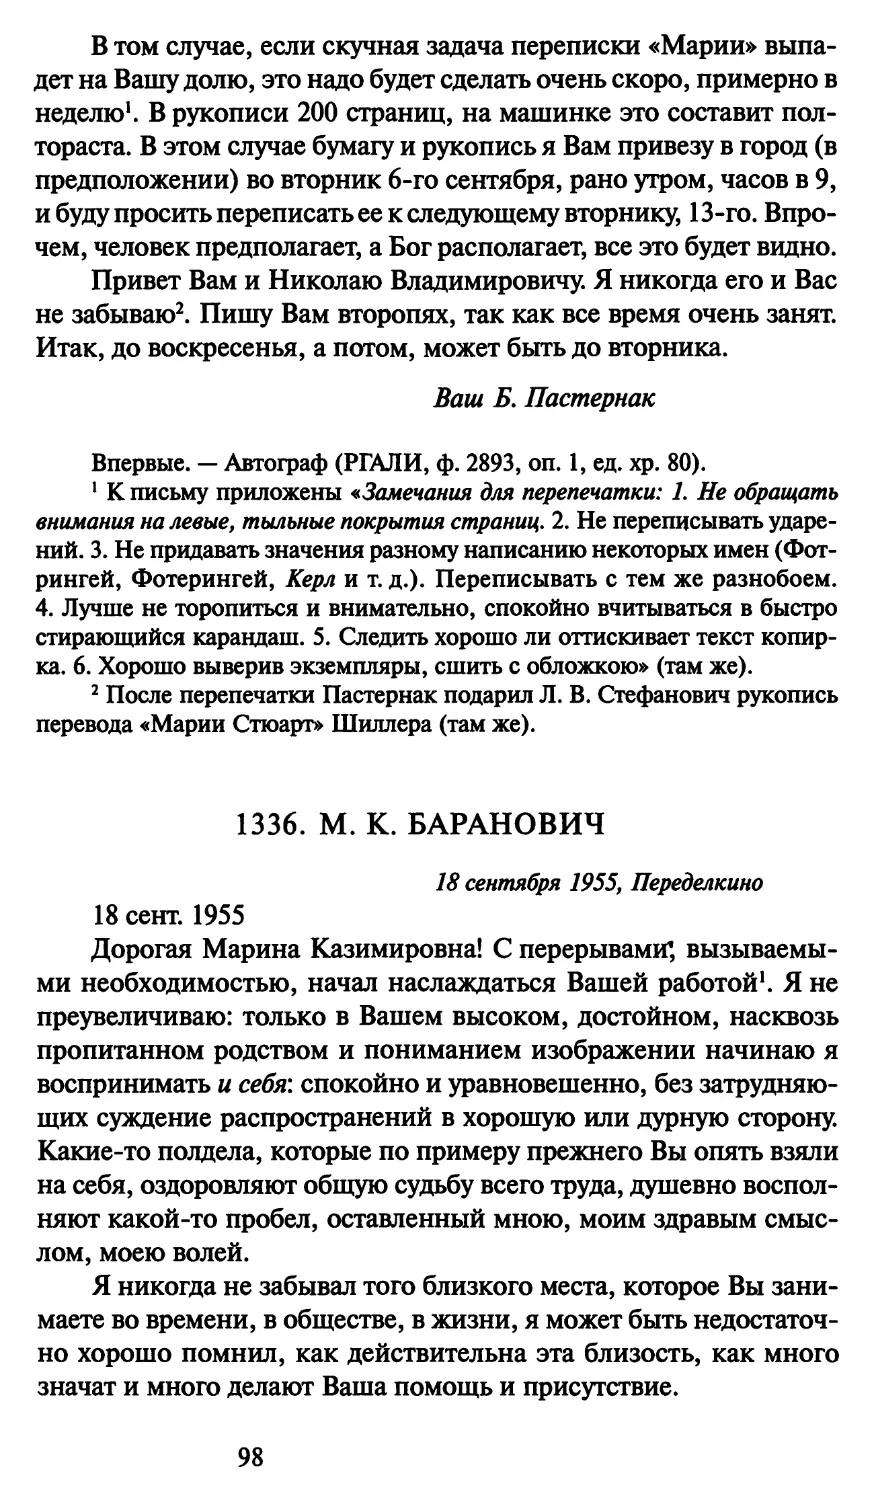 1336. М. К. Баранович 18 сентября 1955